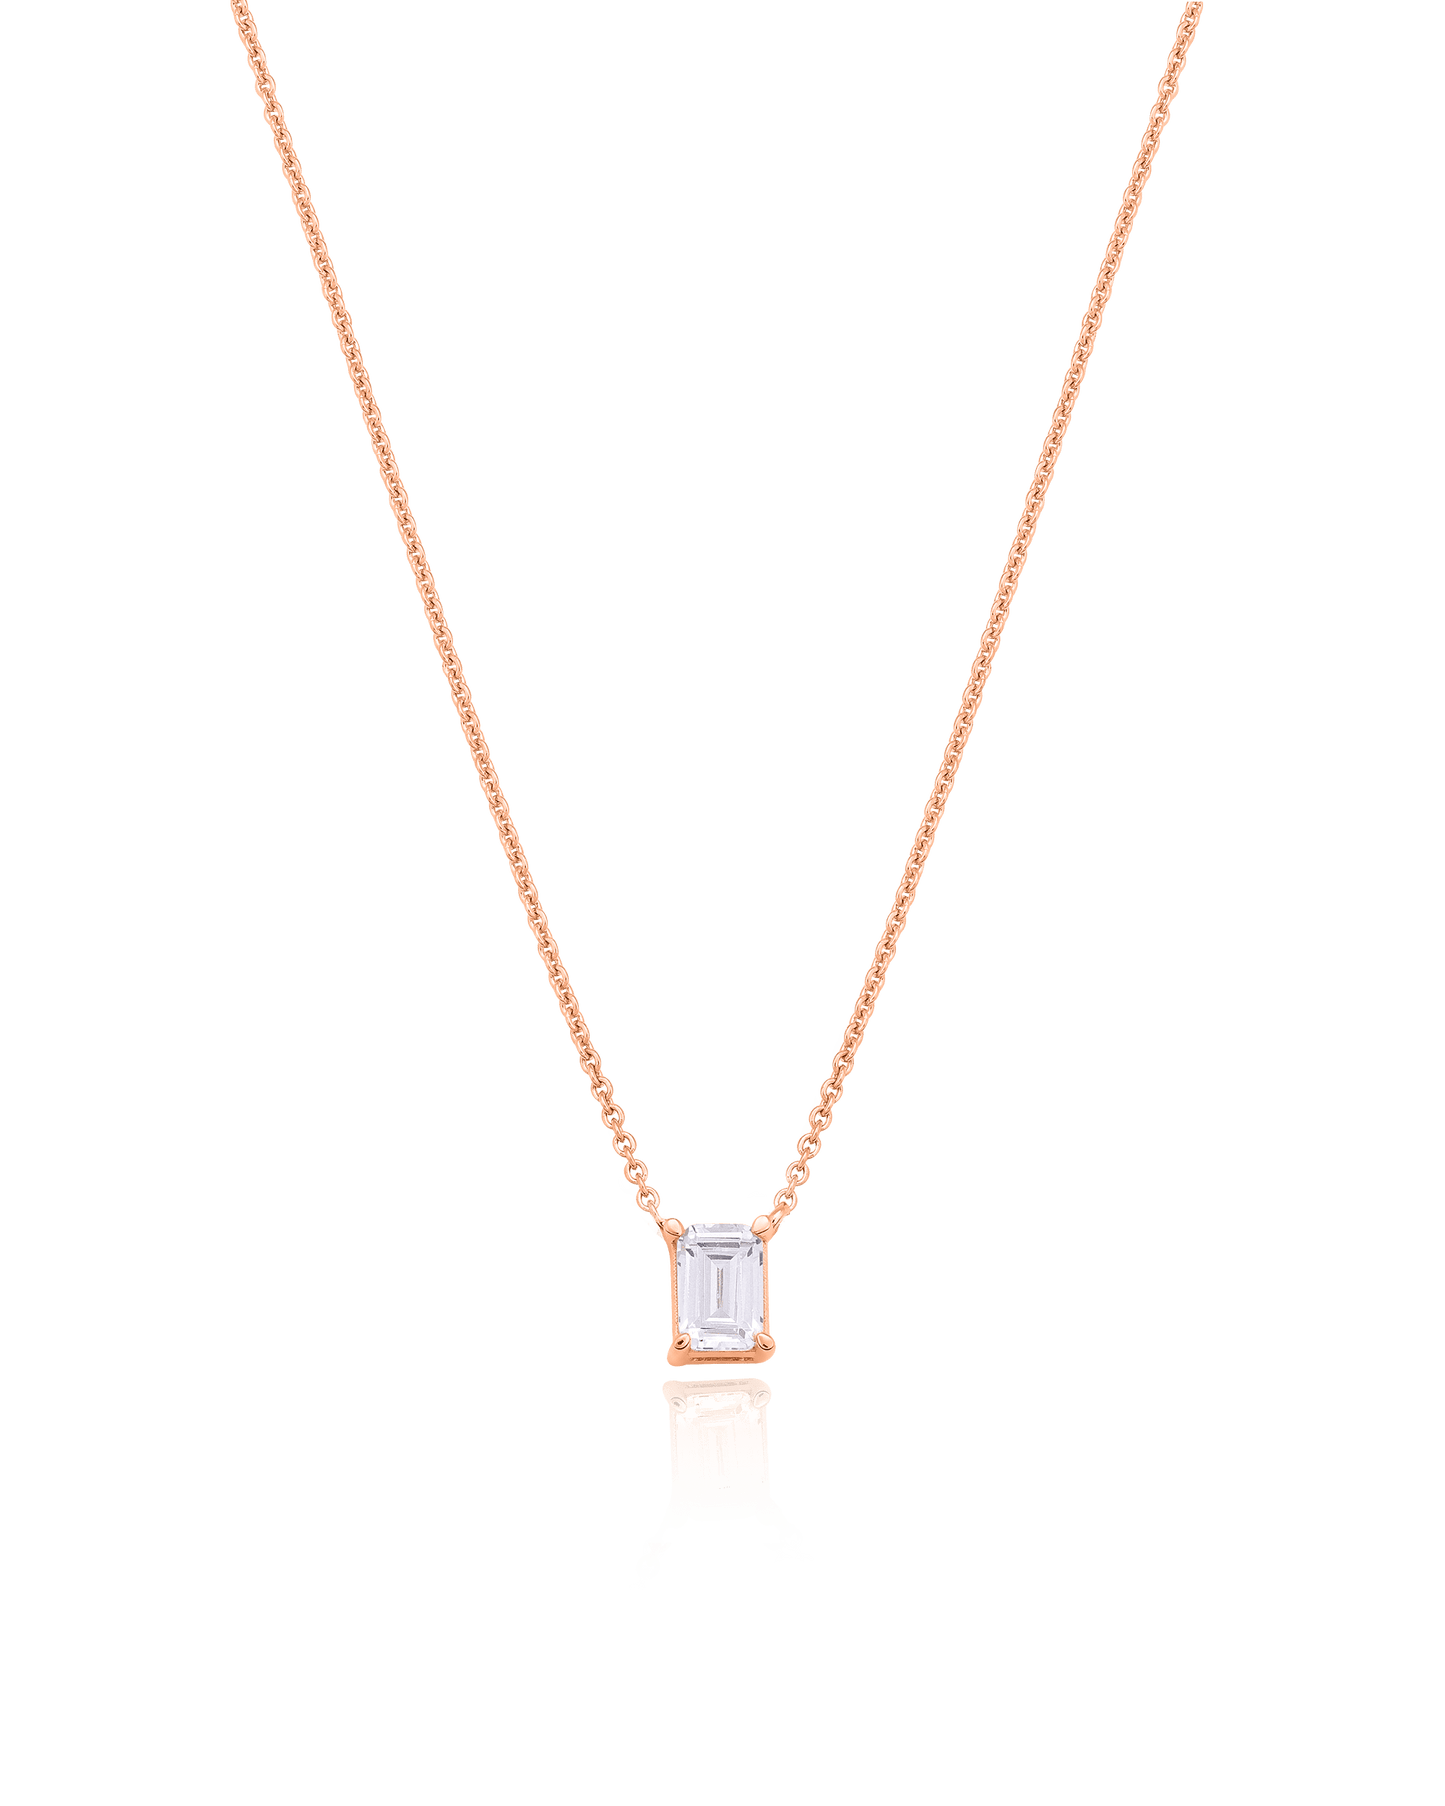 Emerald Solitaire Diamond Necklace - 18K Rose Vermeil Necklaces magal-dev 0.10 CT 16” 